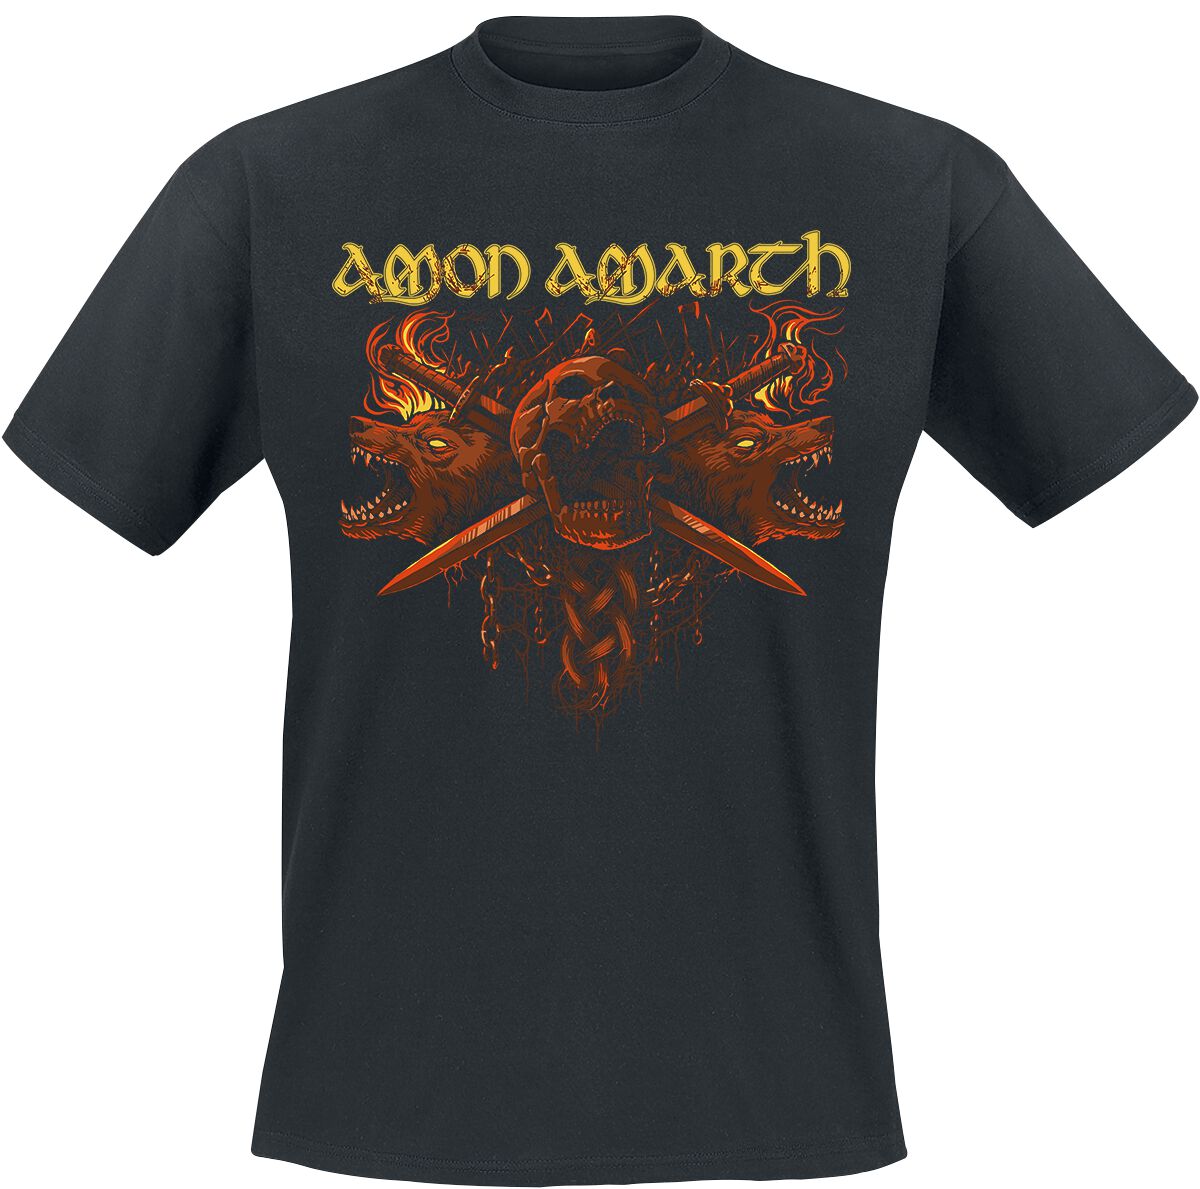 Amon Amarth T-Shirt - Masters Of War - M bis XL - für Männer - Größe L - schwarz  - Lizenziertes Merchandise!